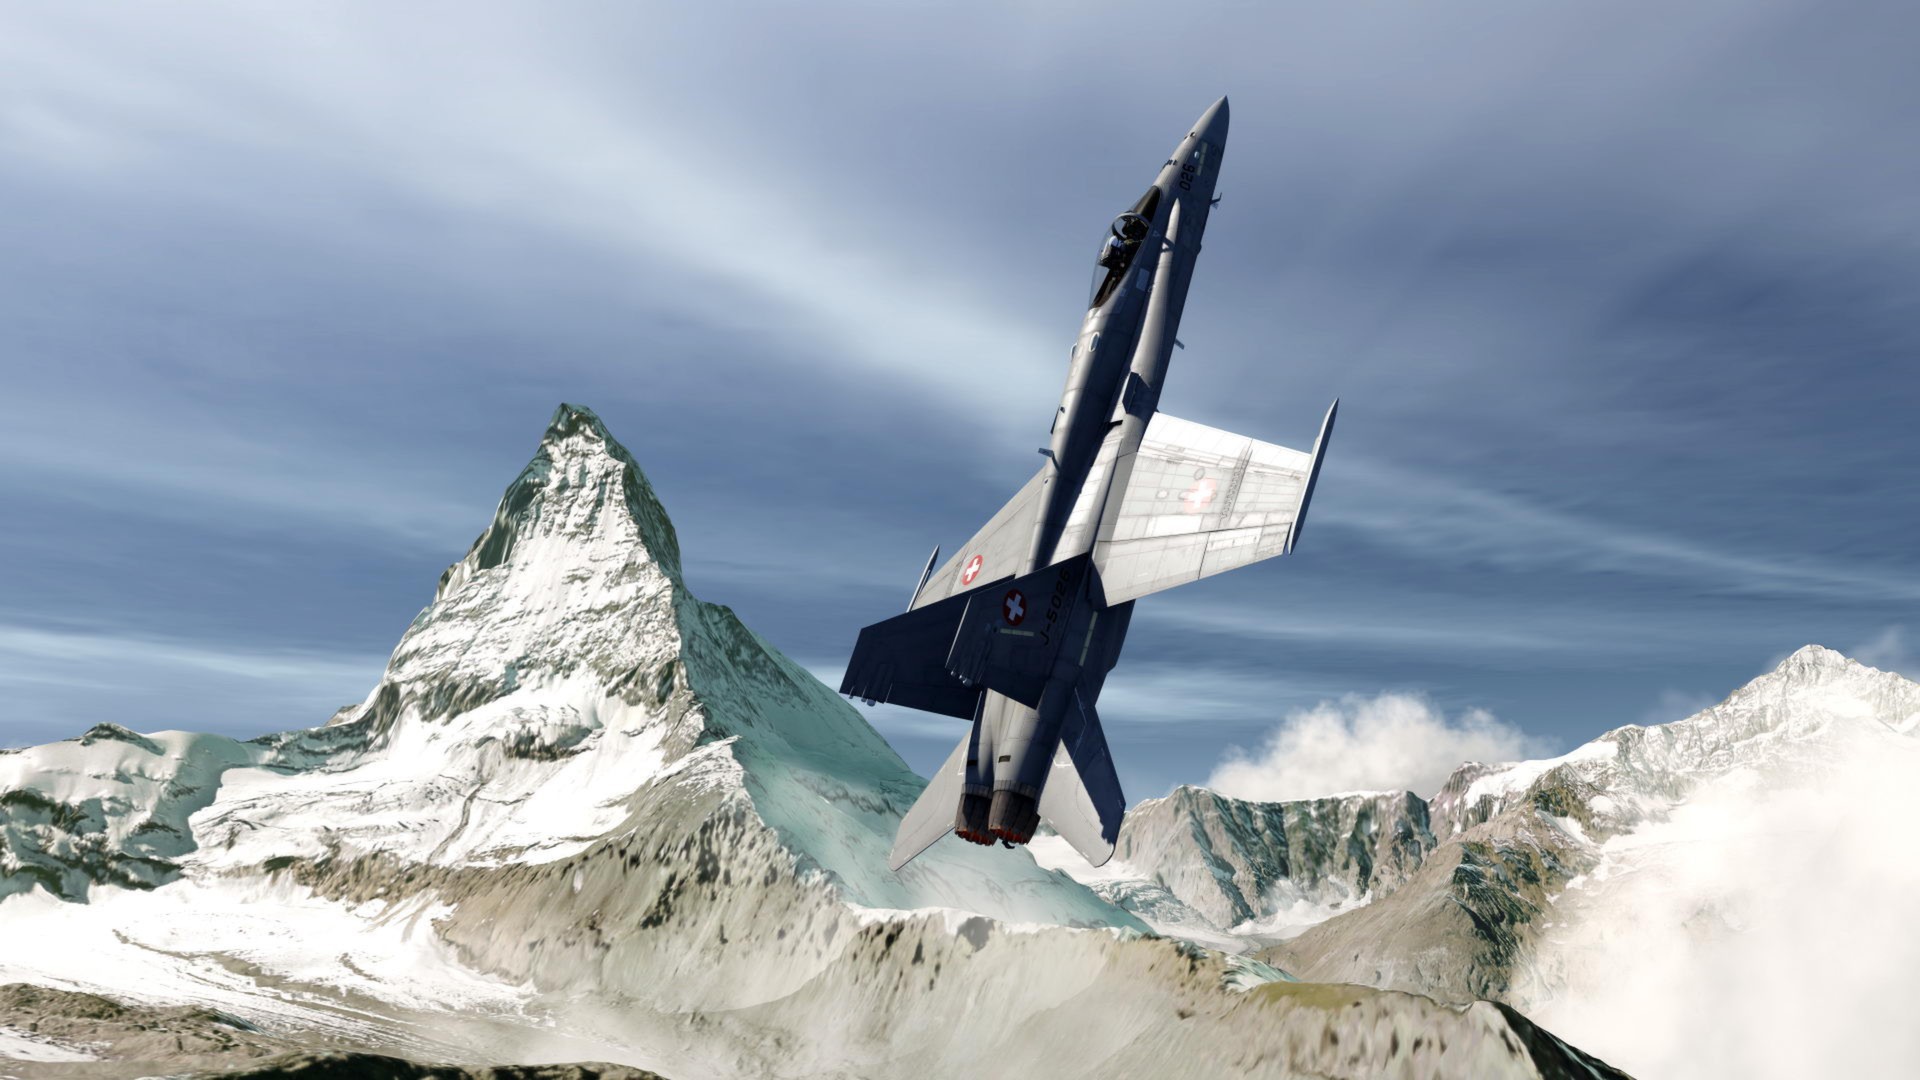 Aerofly FS 1 Flight Simulator Steam Gift 2259.91 usd